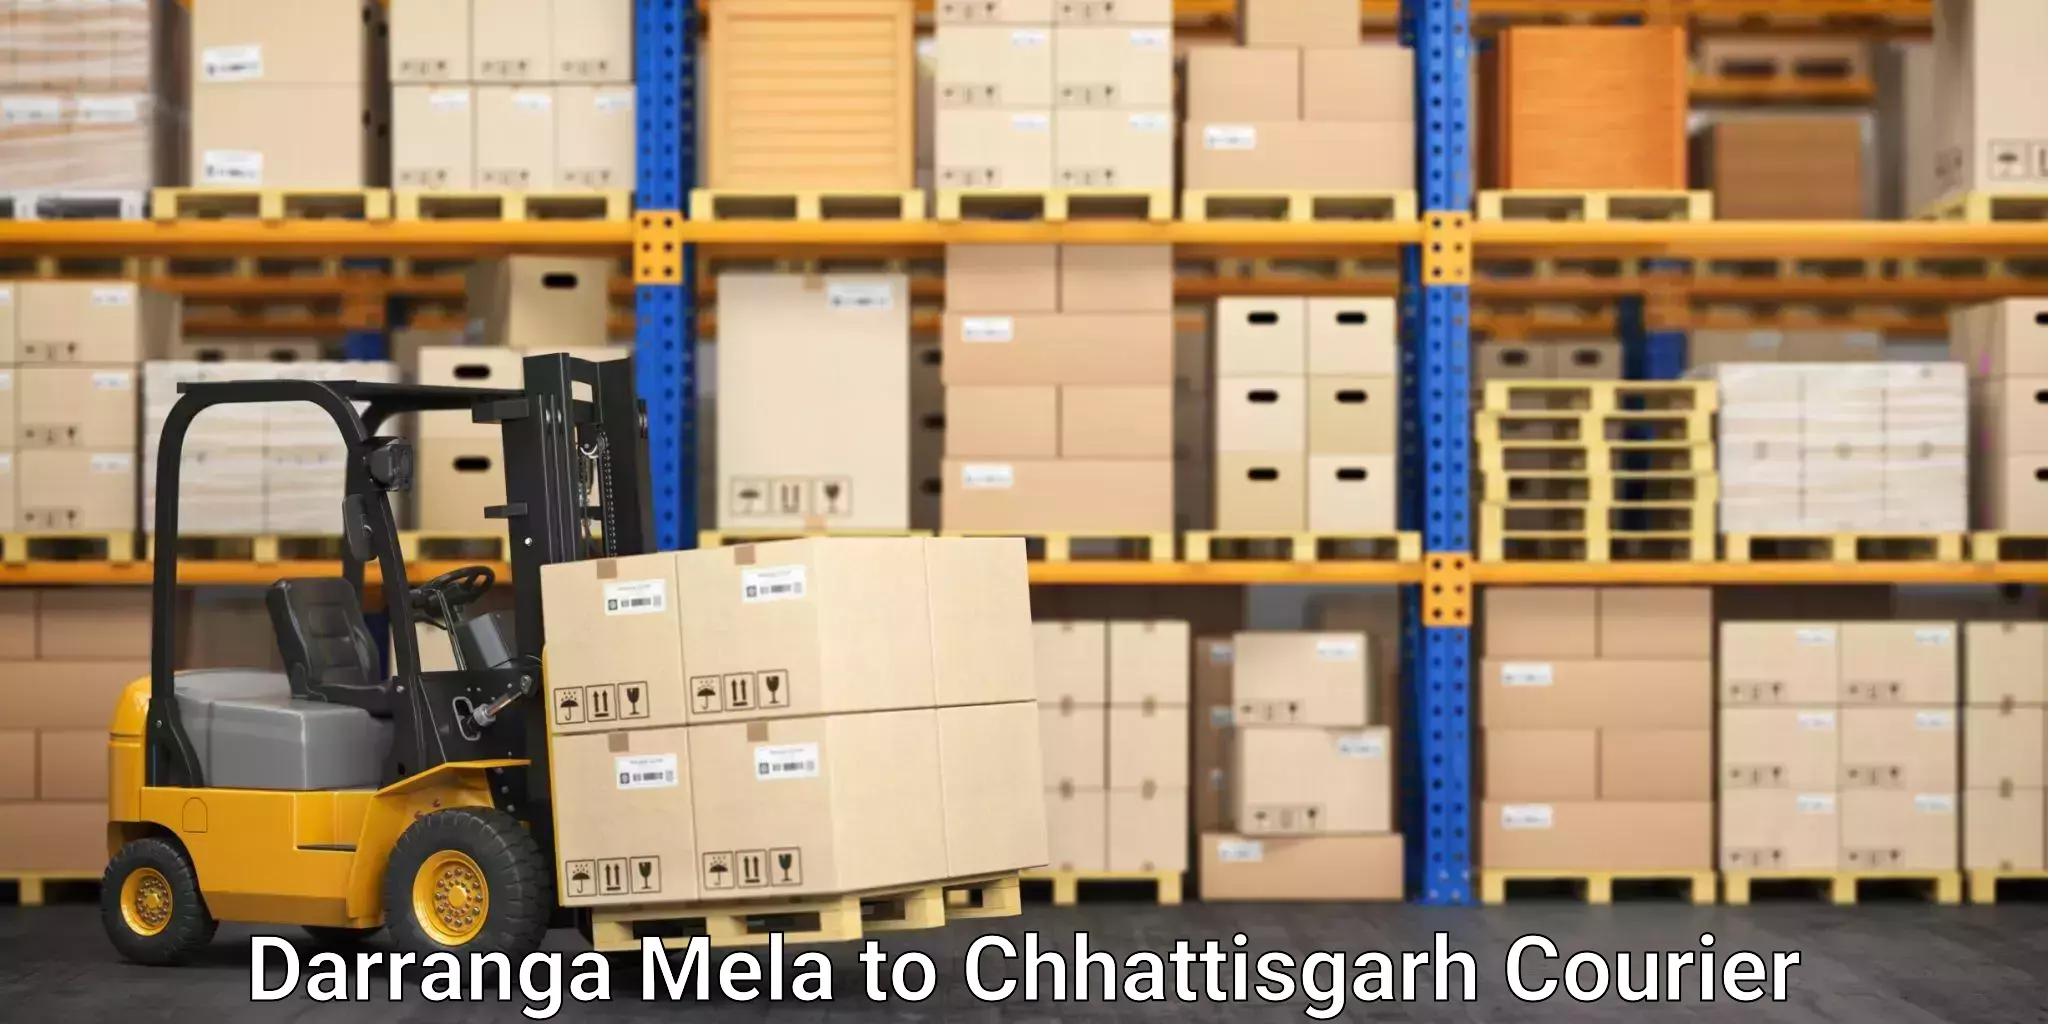 Supply chain efficiency Darranga Mela to keshkal